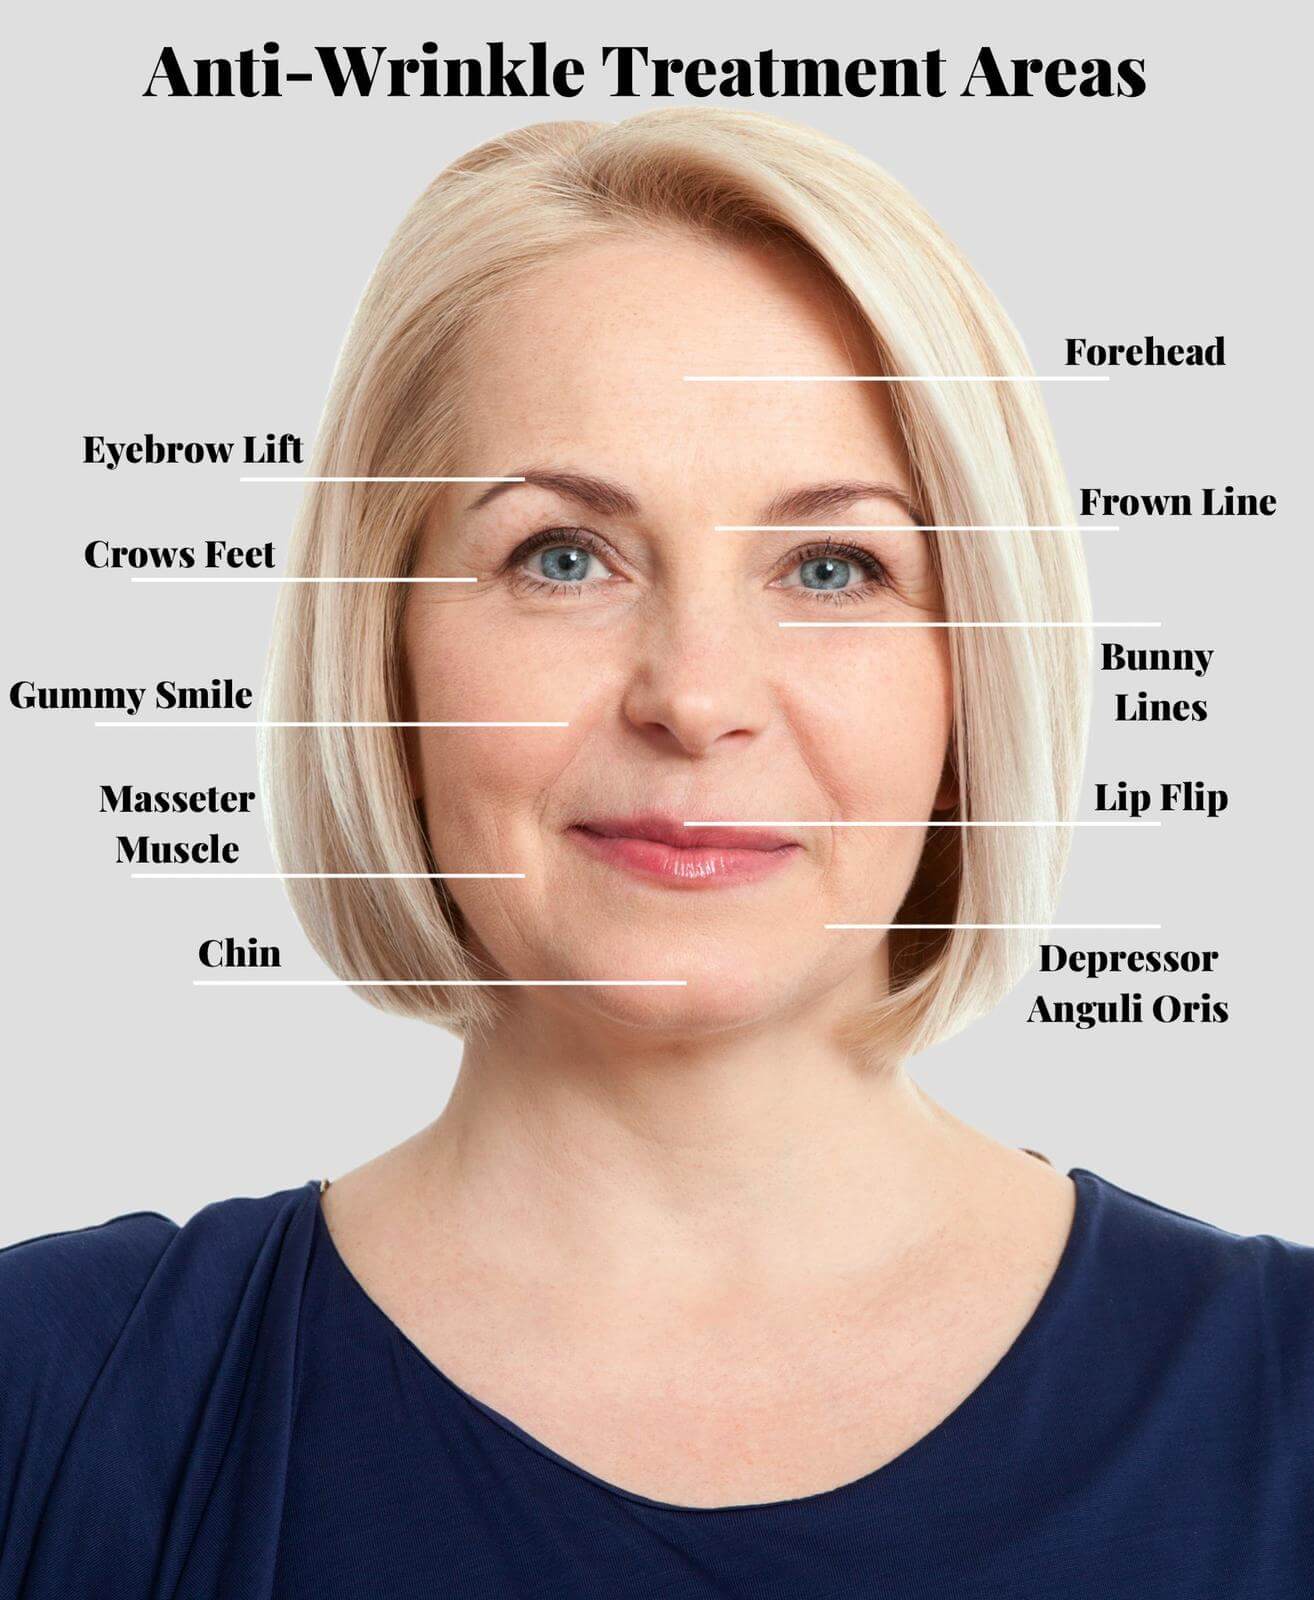 Anti-Wrinkle treatment areas